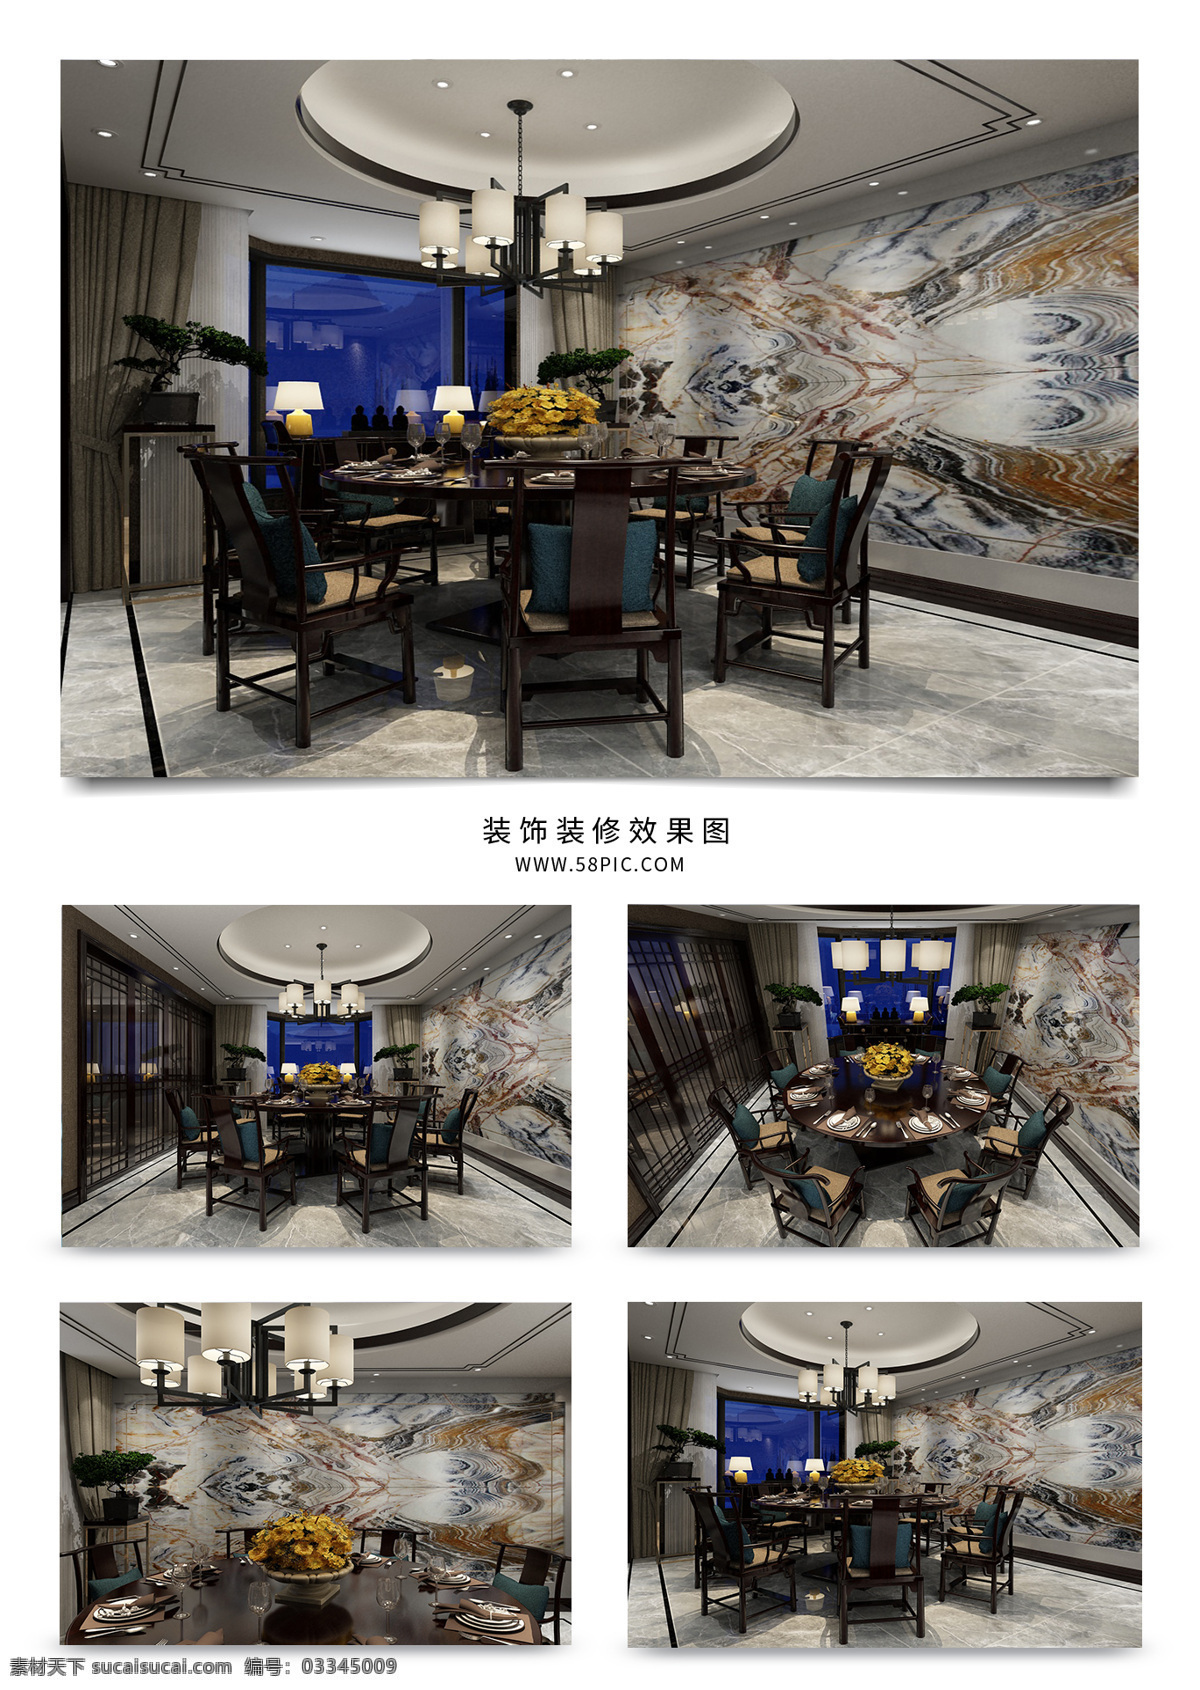 庄重 新 中式 餐厅 效果图 大理石背景 窗帘 波打线 中国风 吊灯 餐椅组合